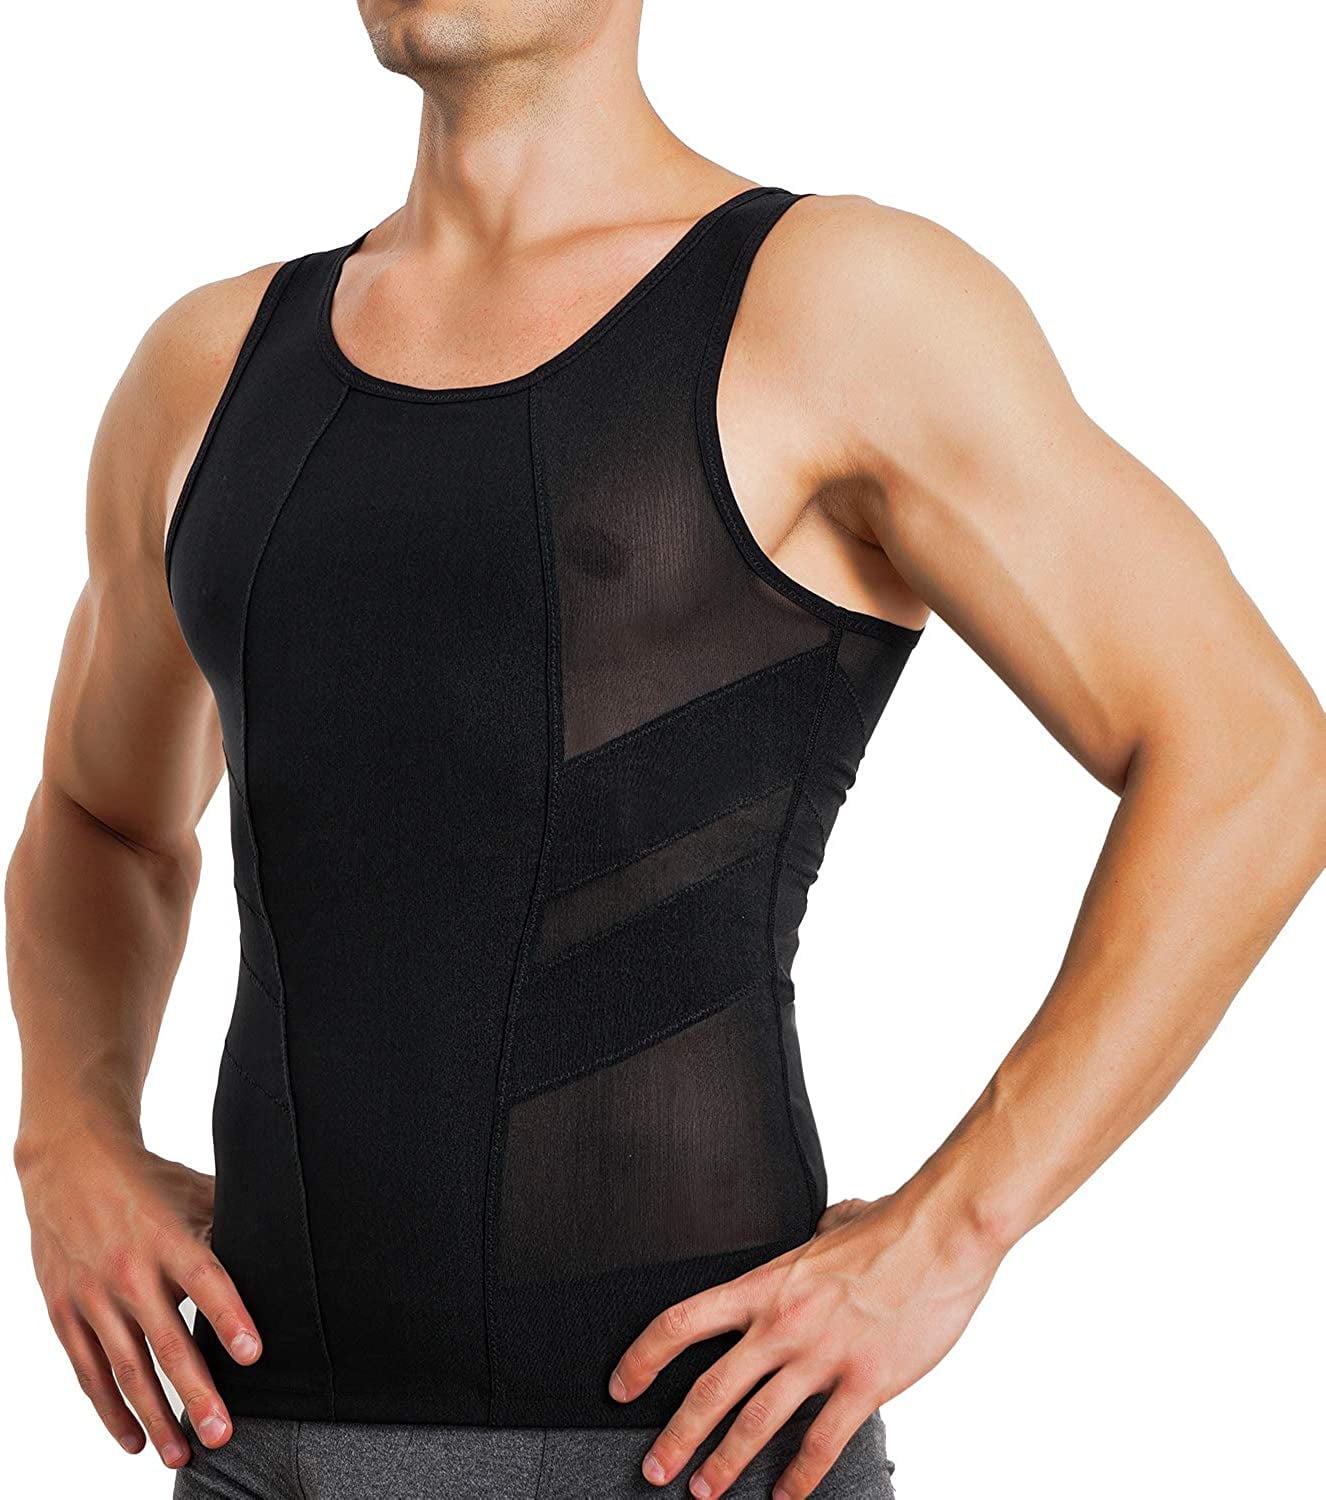 Spandex//Nylon Slimming Vest Body Shapers 